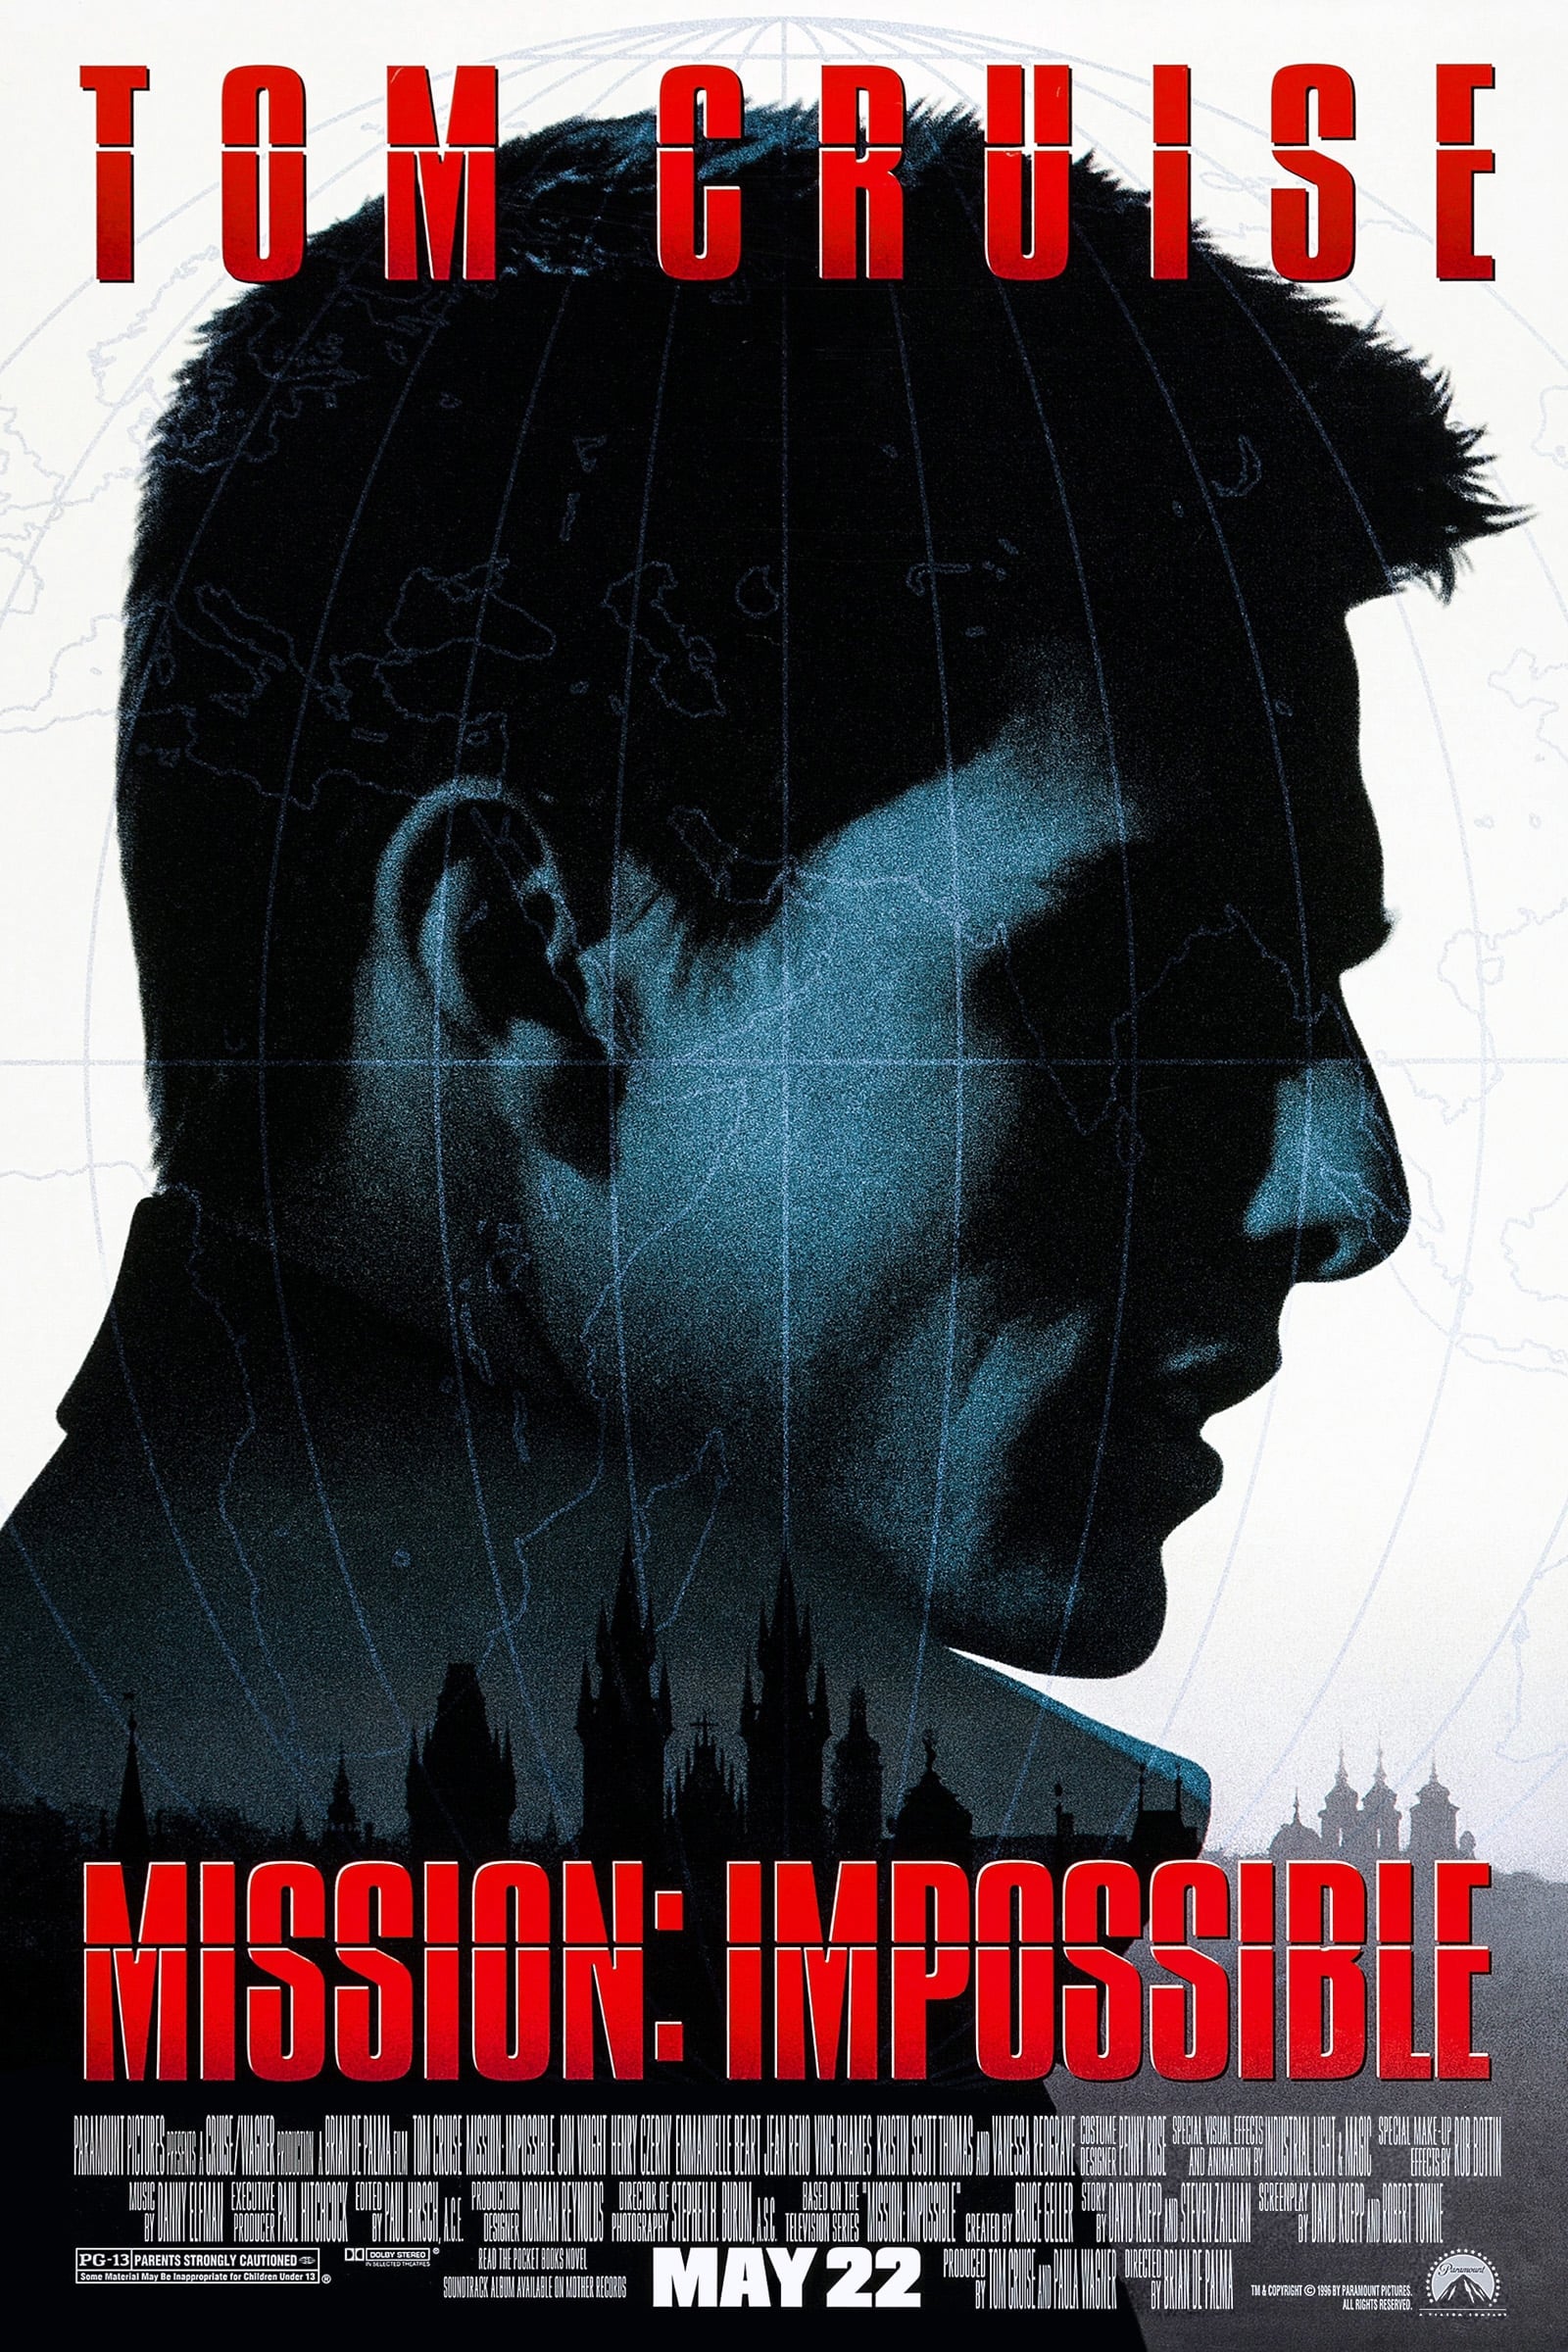 EN - Mission Impossible 1 (1996)